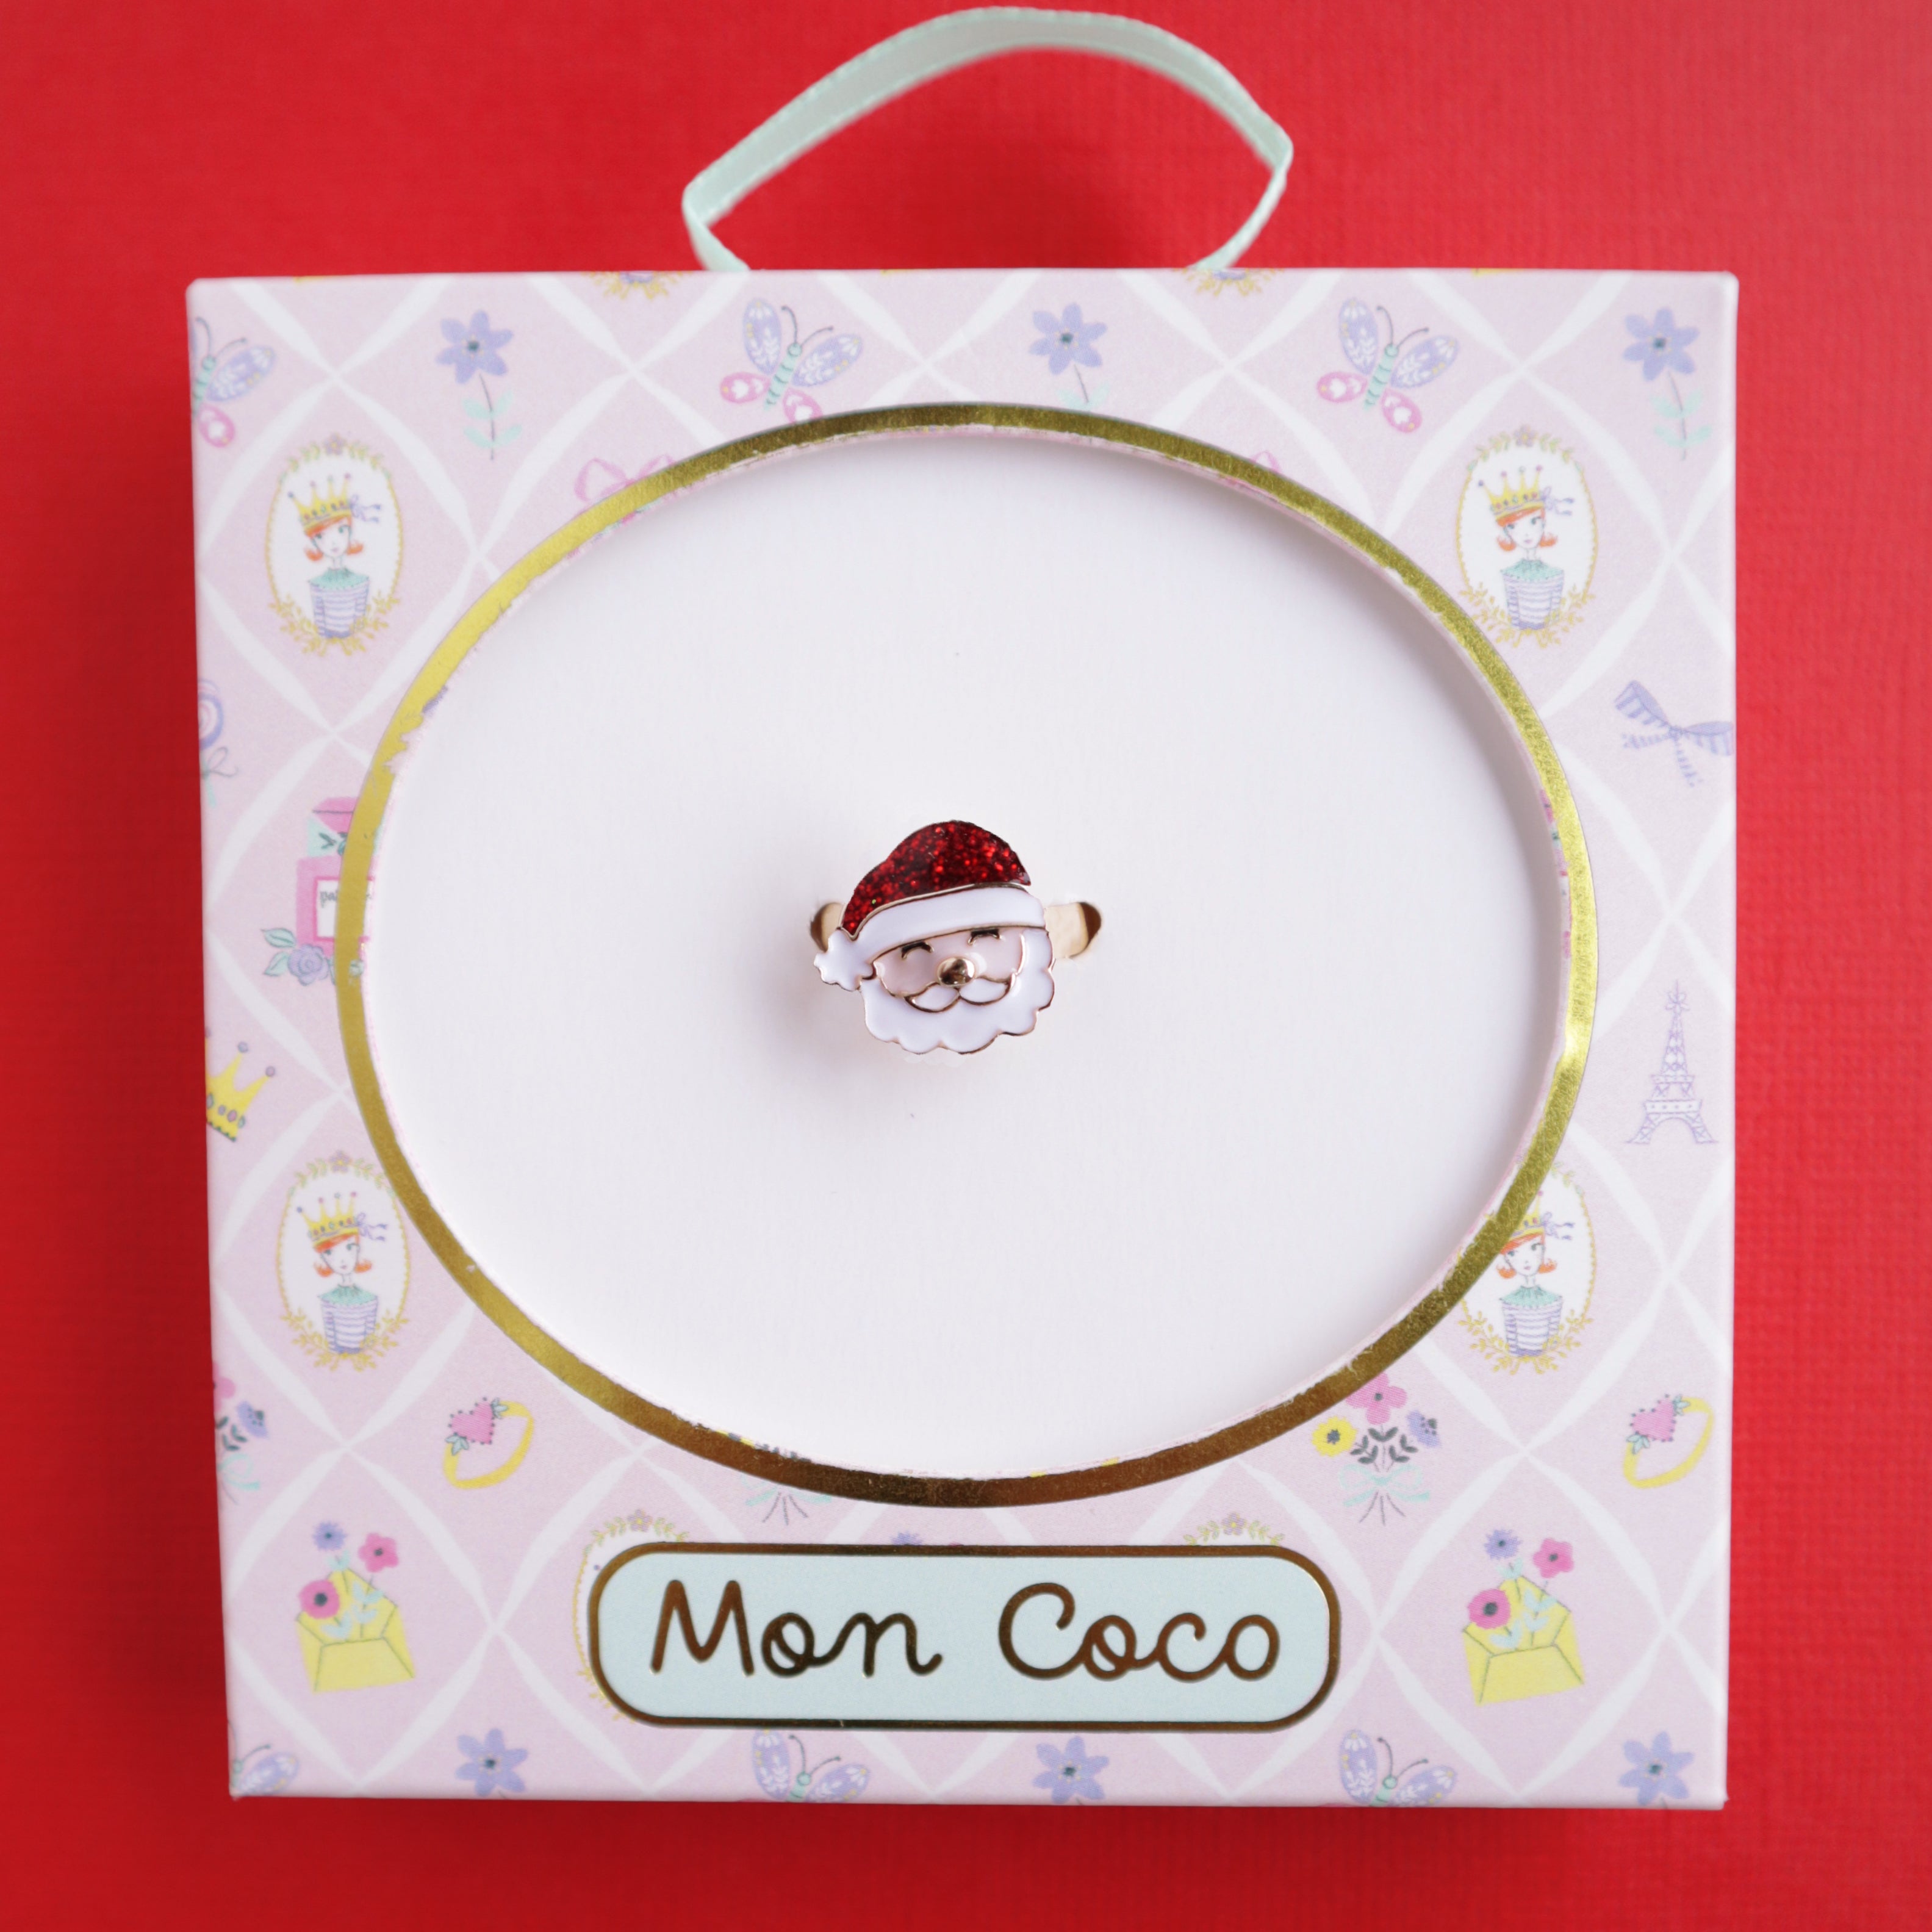 Mon Coco | Adjustable Ring - Dear Santa